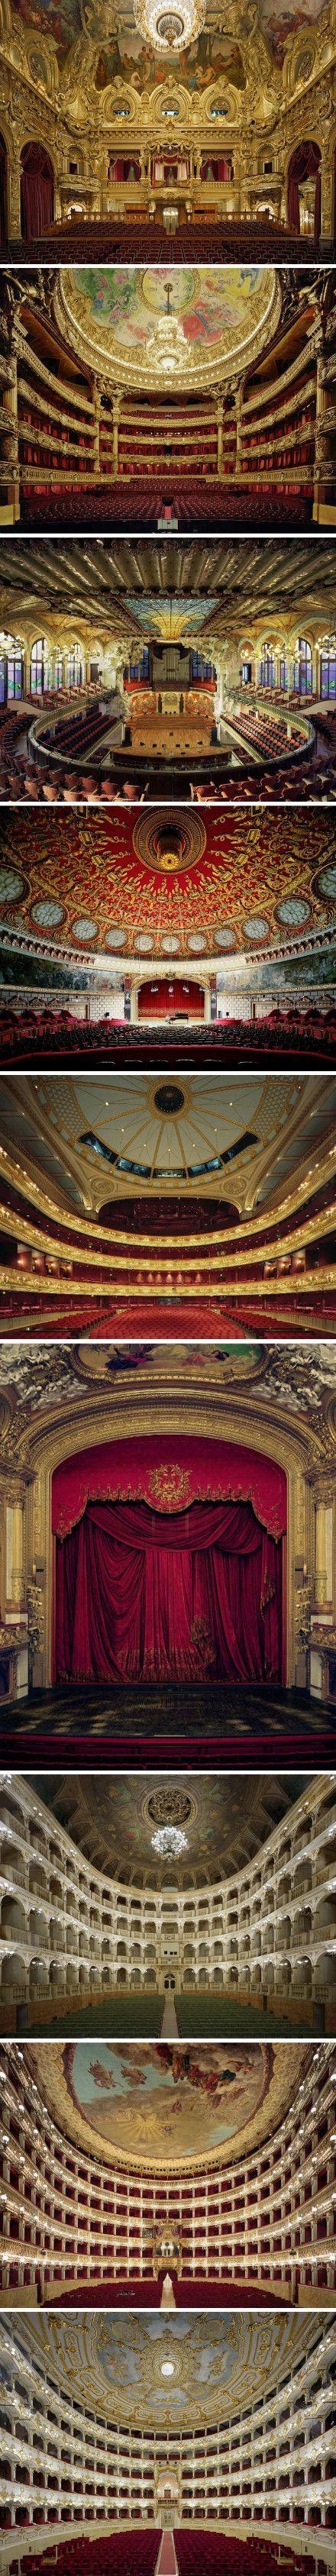 摄影歌剧院歌剧院图片歌剧院舞台歌剧院背景巴黎歌剧院舞台歌剧舞台